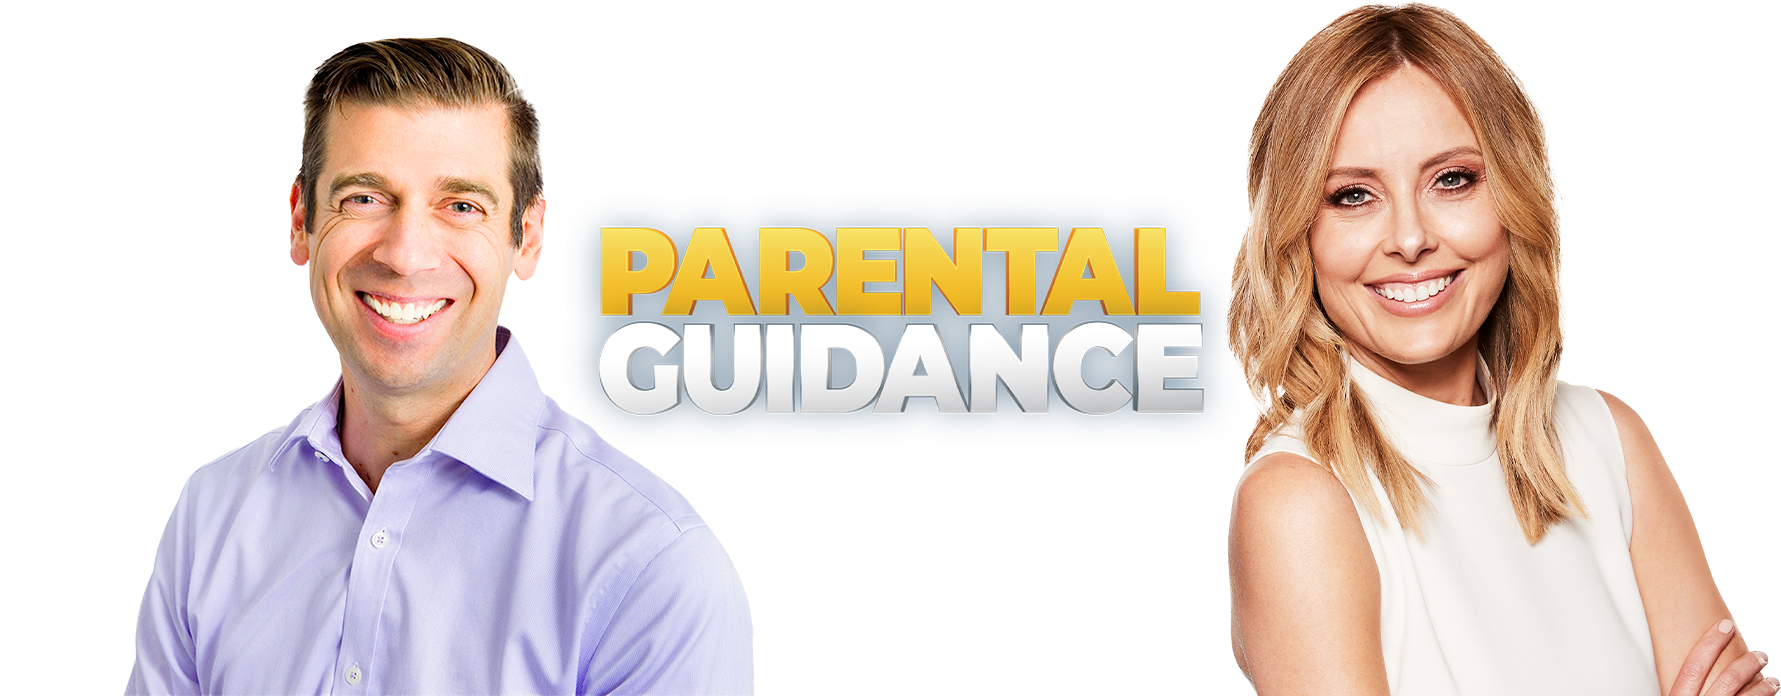 ParentalGuidance_Header